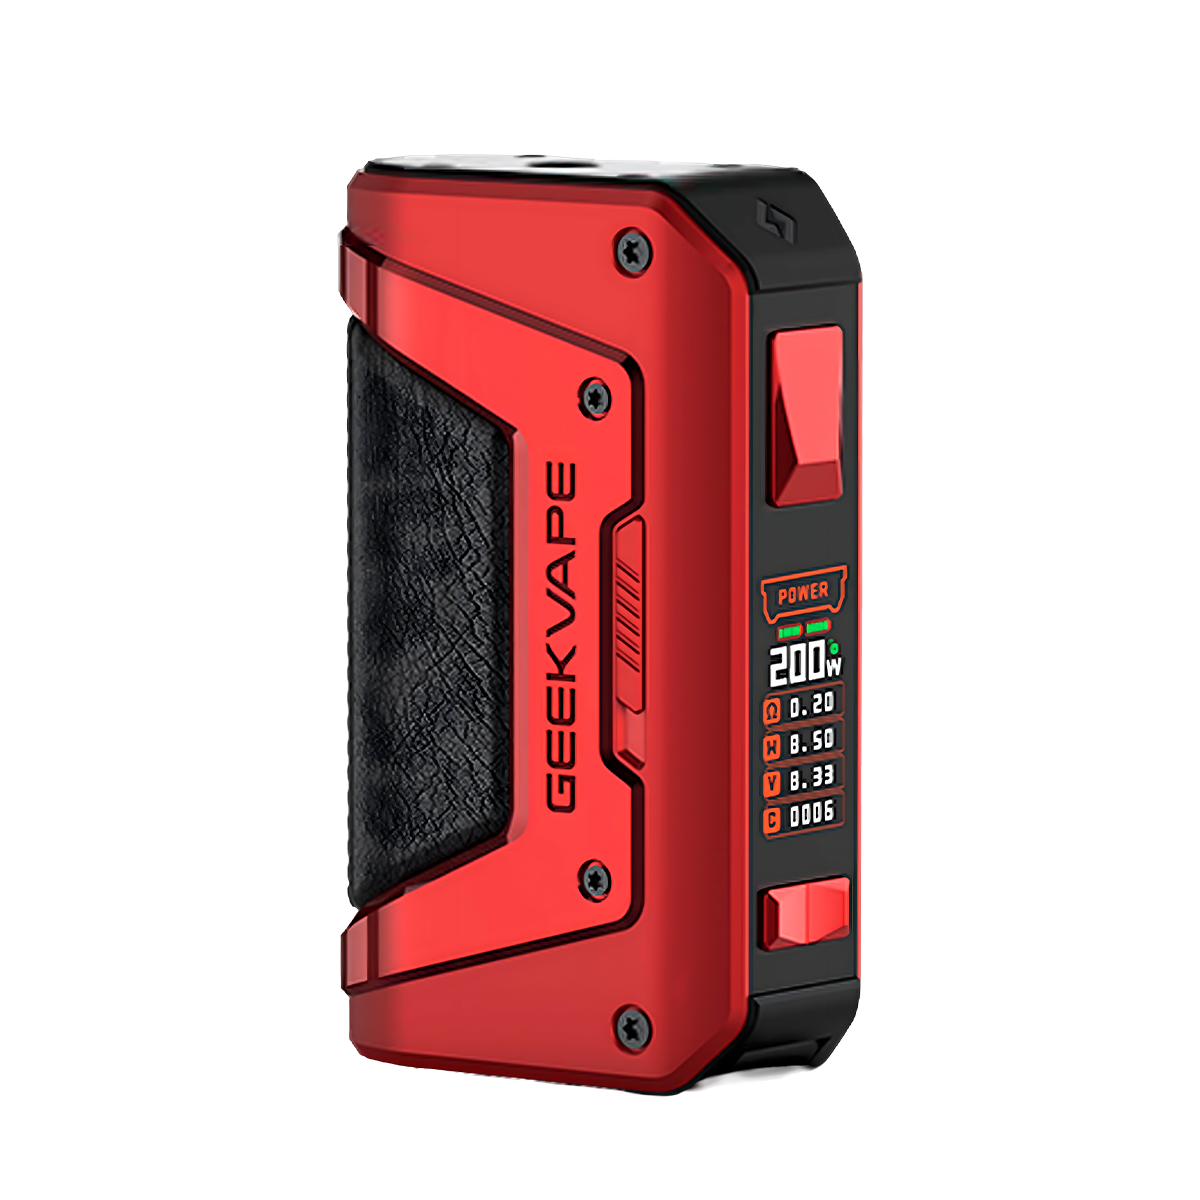 Geekvape L200 (Aegis Legend 2) Box-Mod Kit Red  